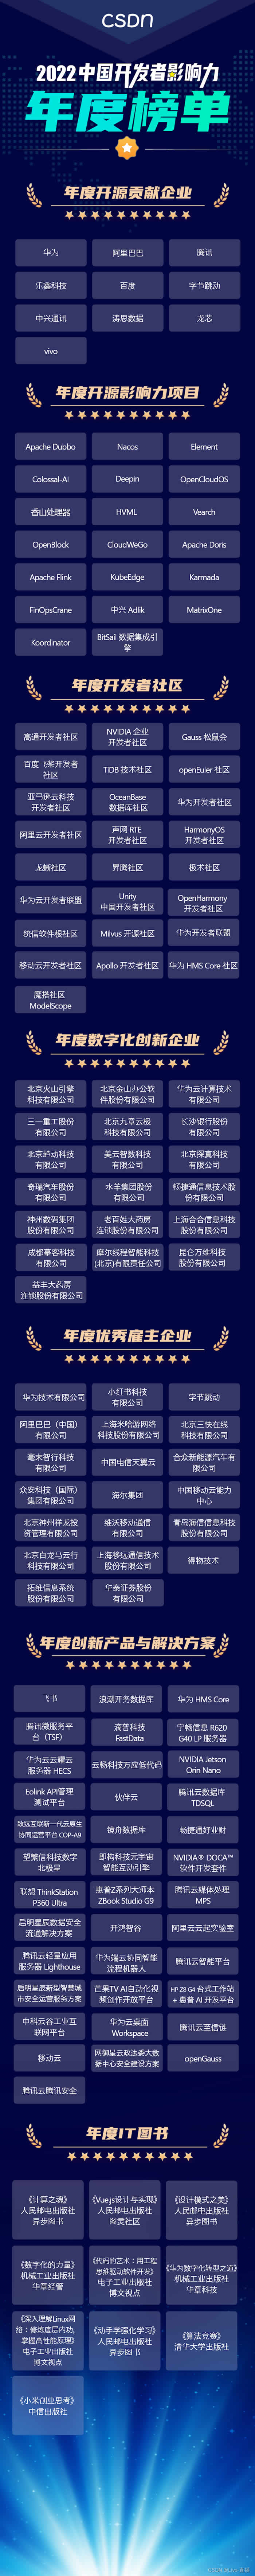 CSDN 2022 中国开发者影响力年度榜单.jpg